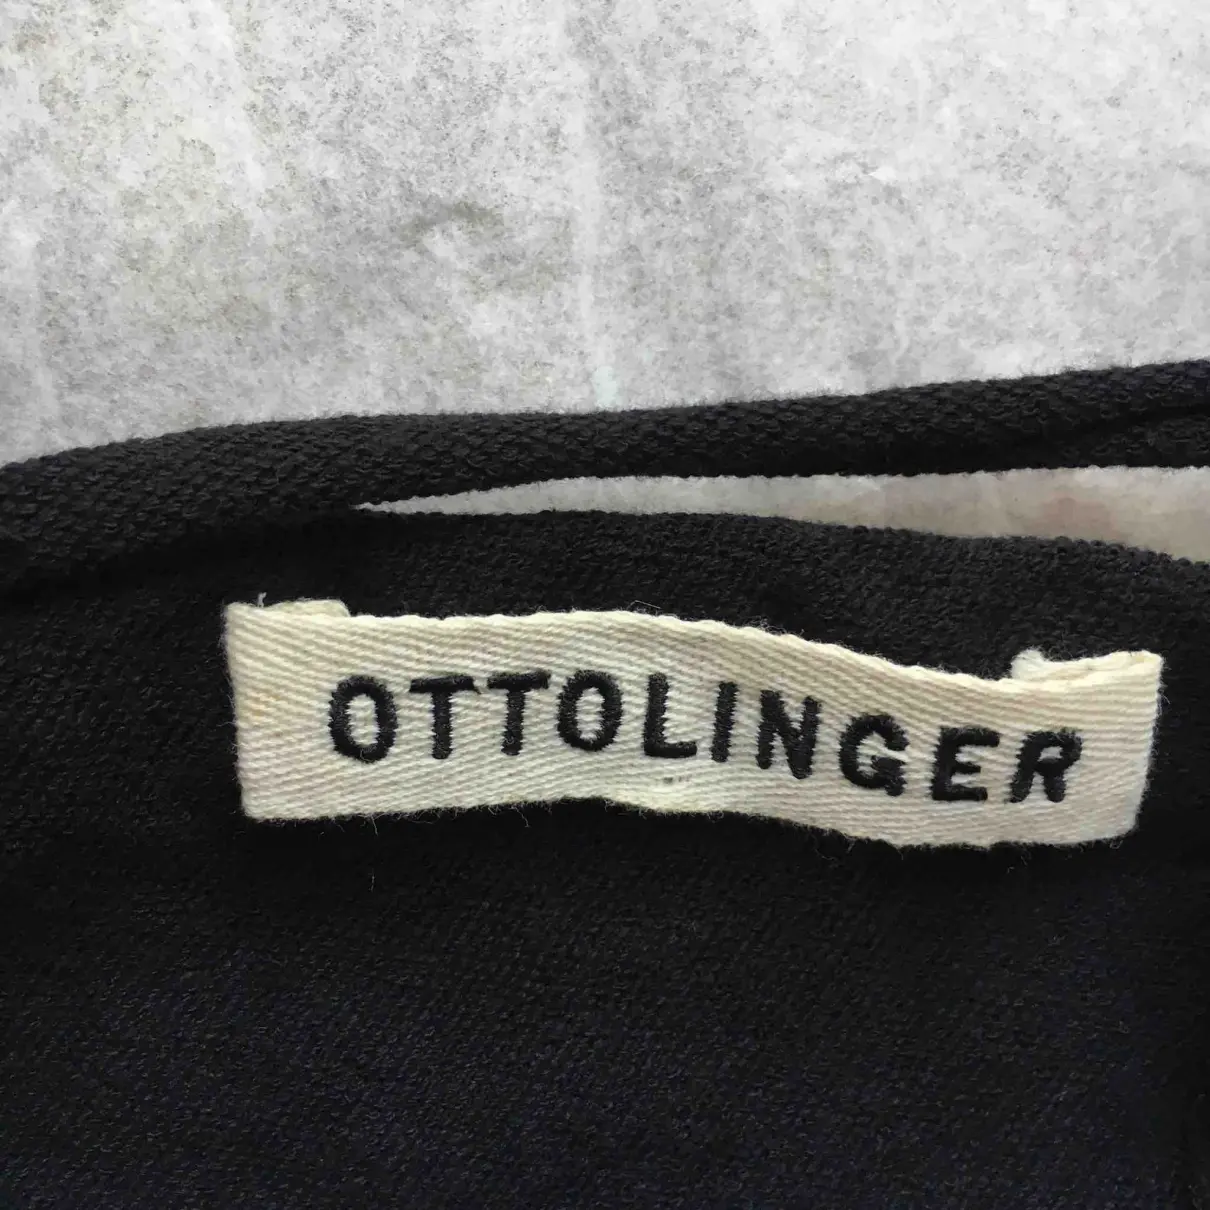 Camisole Ottolinger